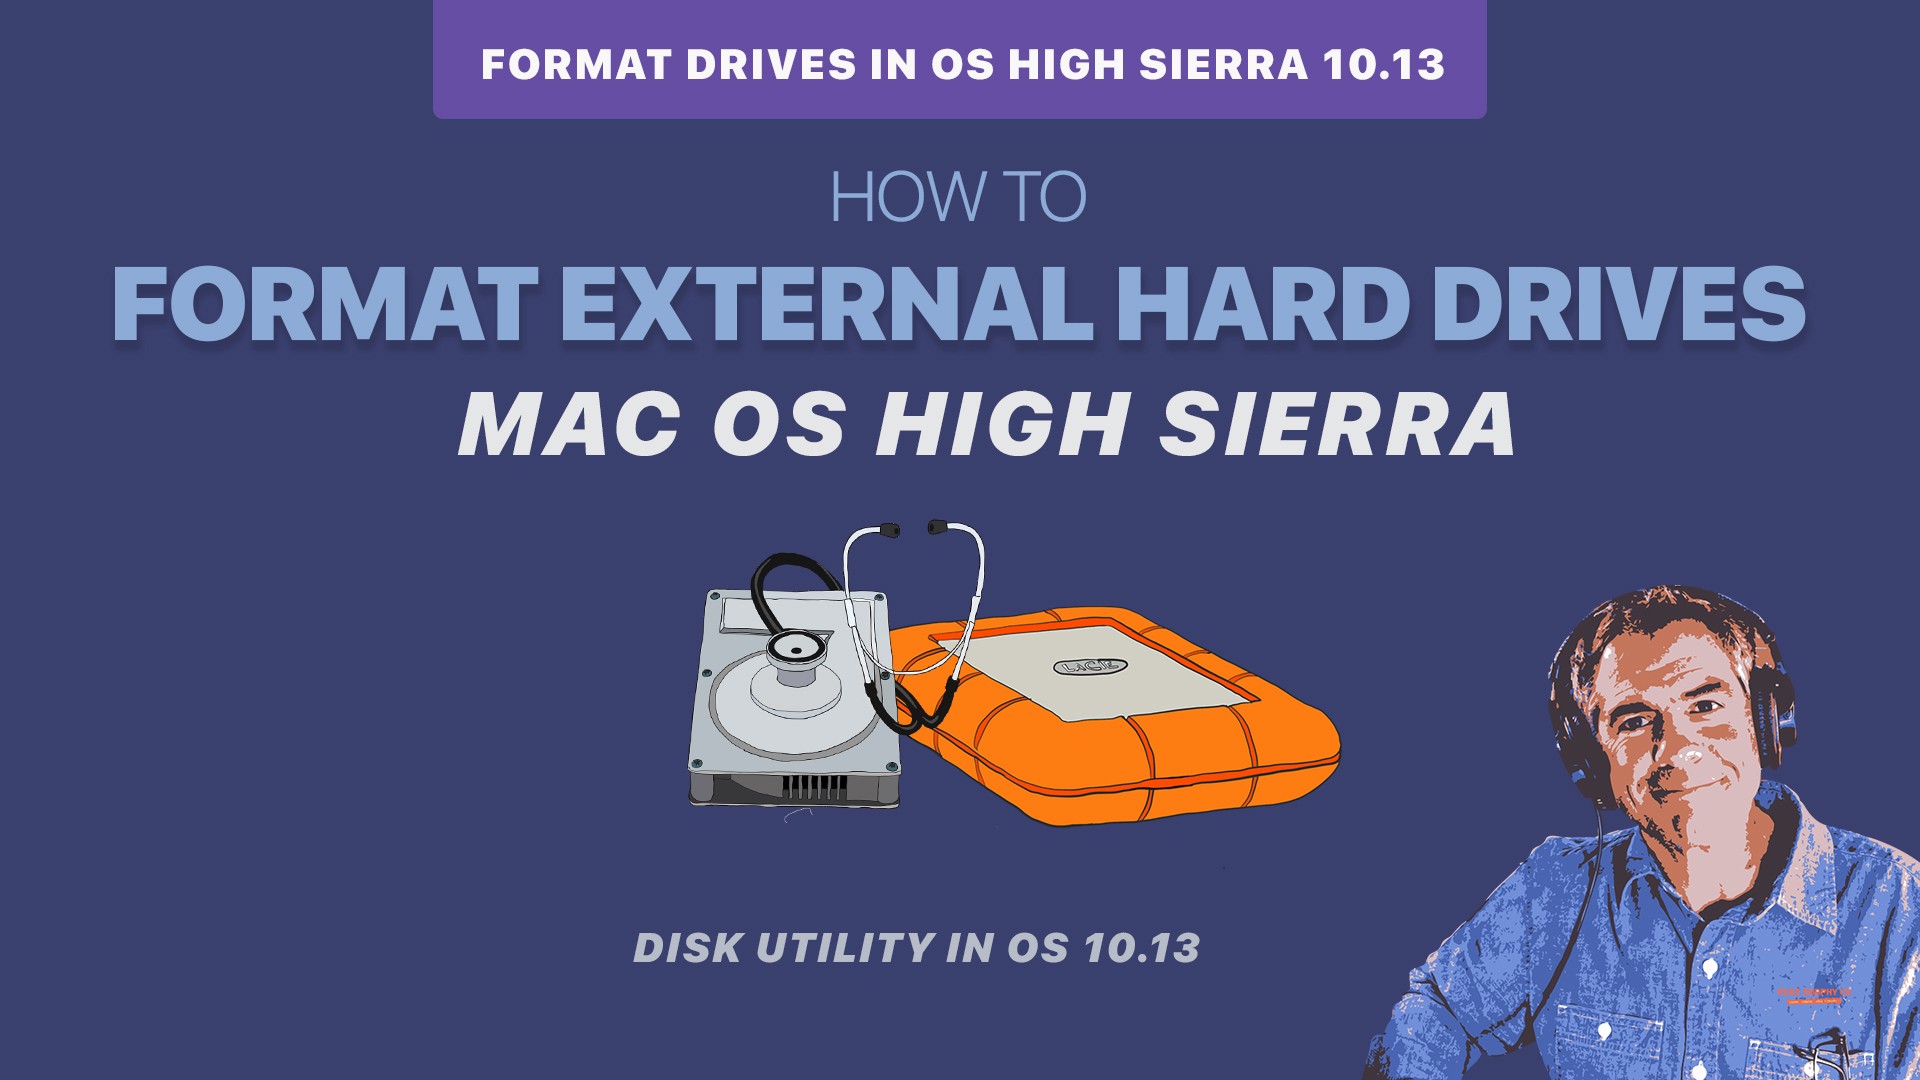 Disk utility v13 for macos high sierra